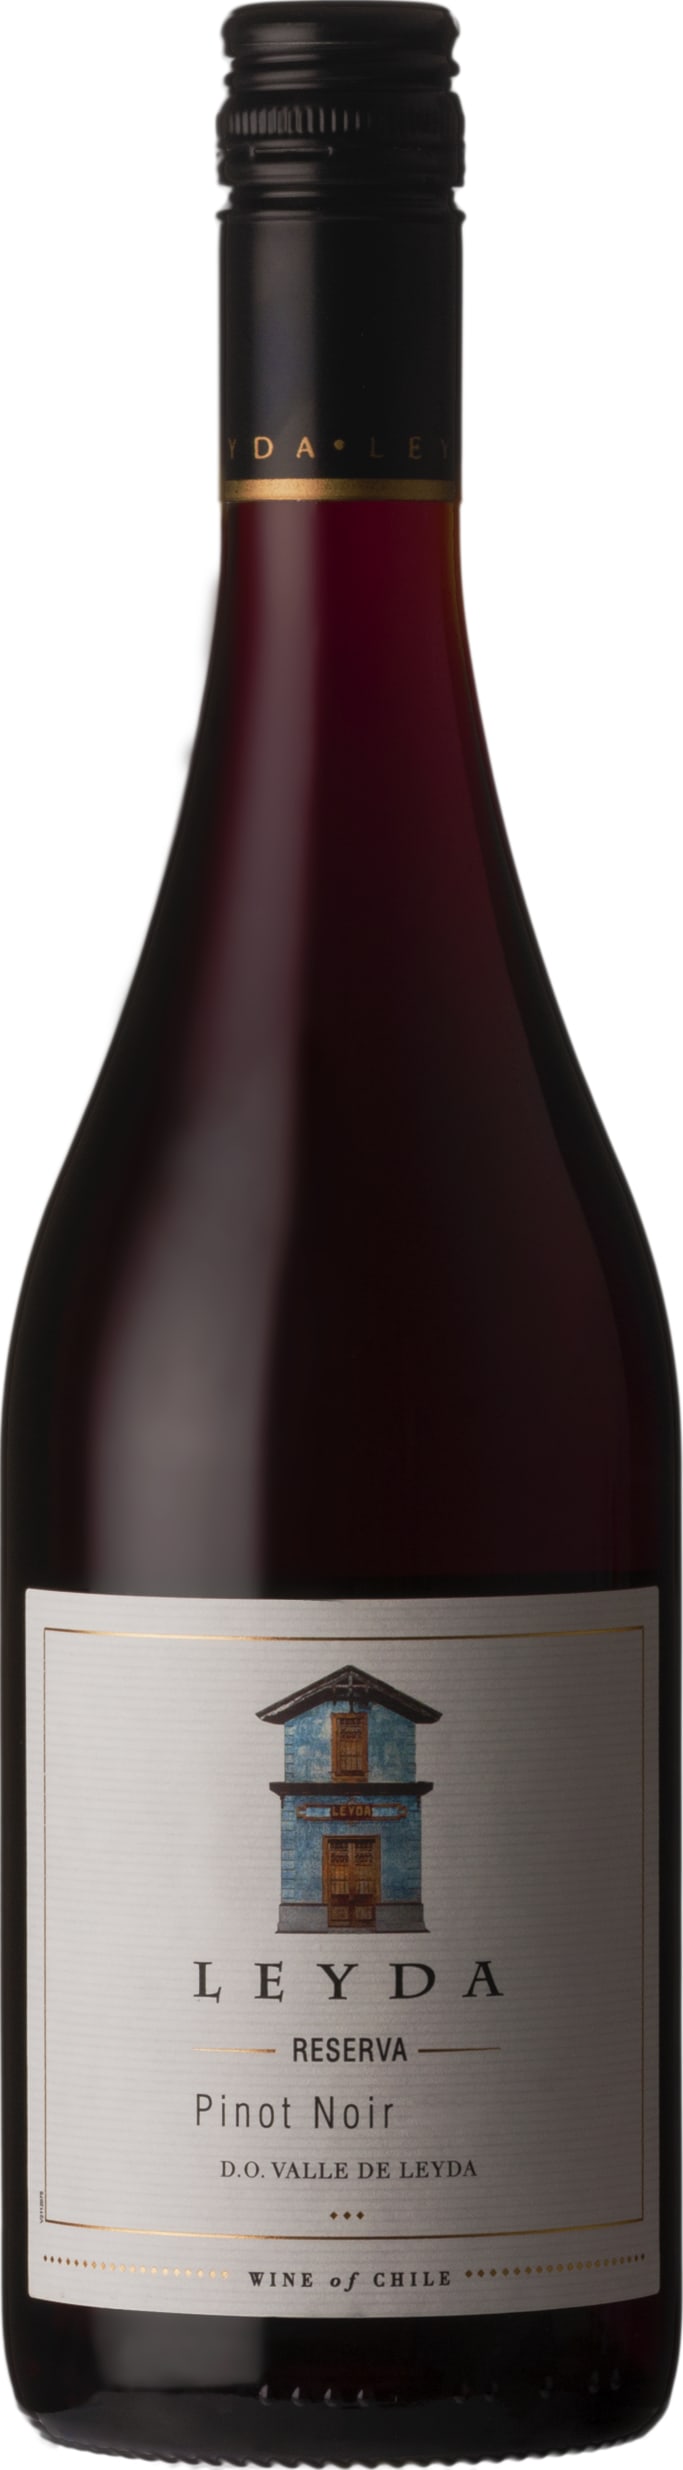 Vina Leyda Pinot Noir Reserva 2022 75cl - Buy Vina Leyda Wines from GREAT WINES DIRECT wine shop